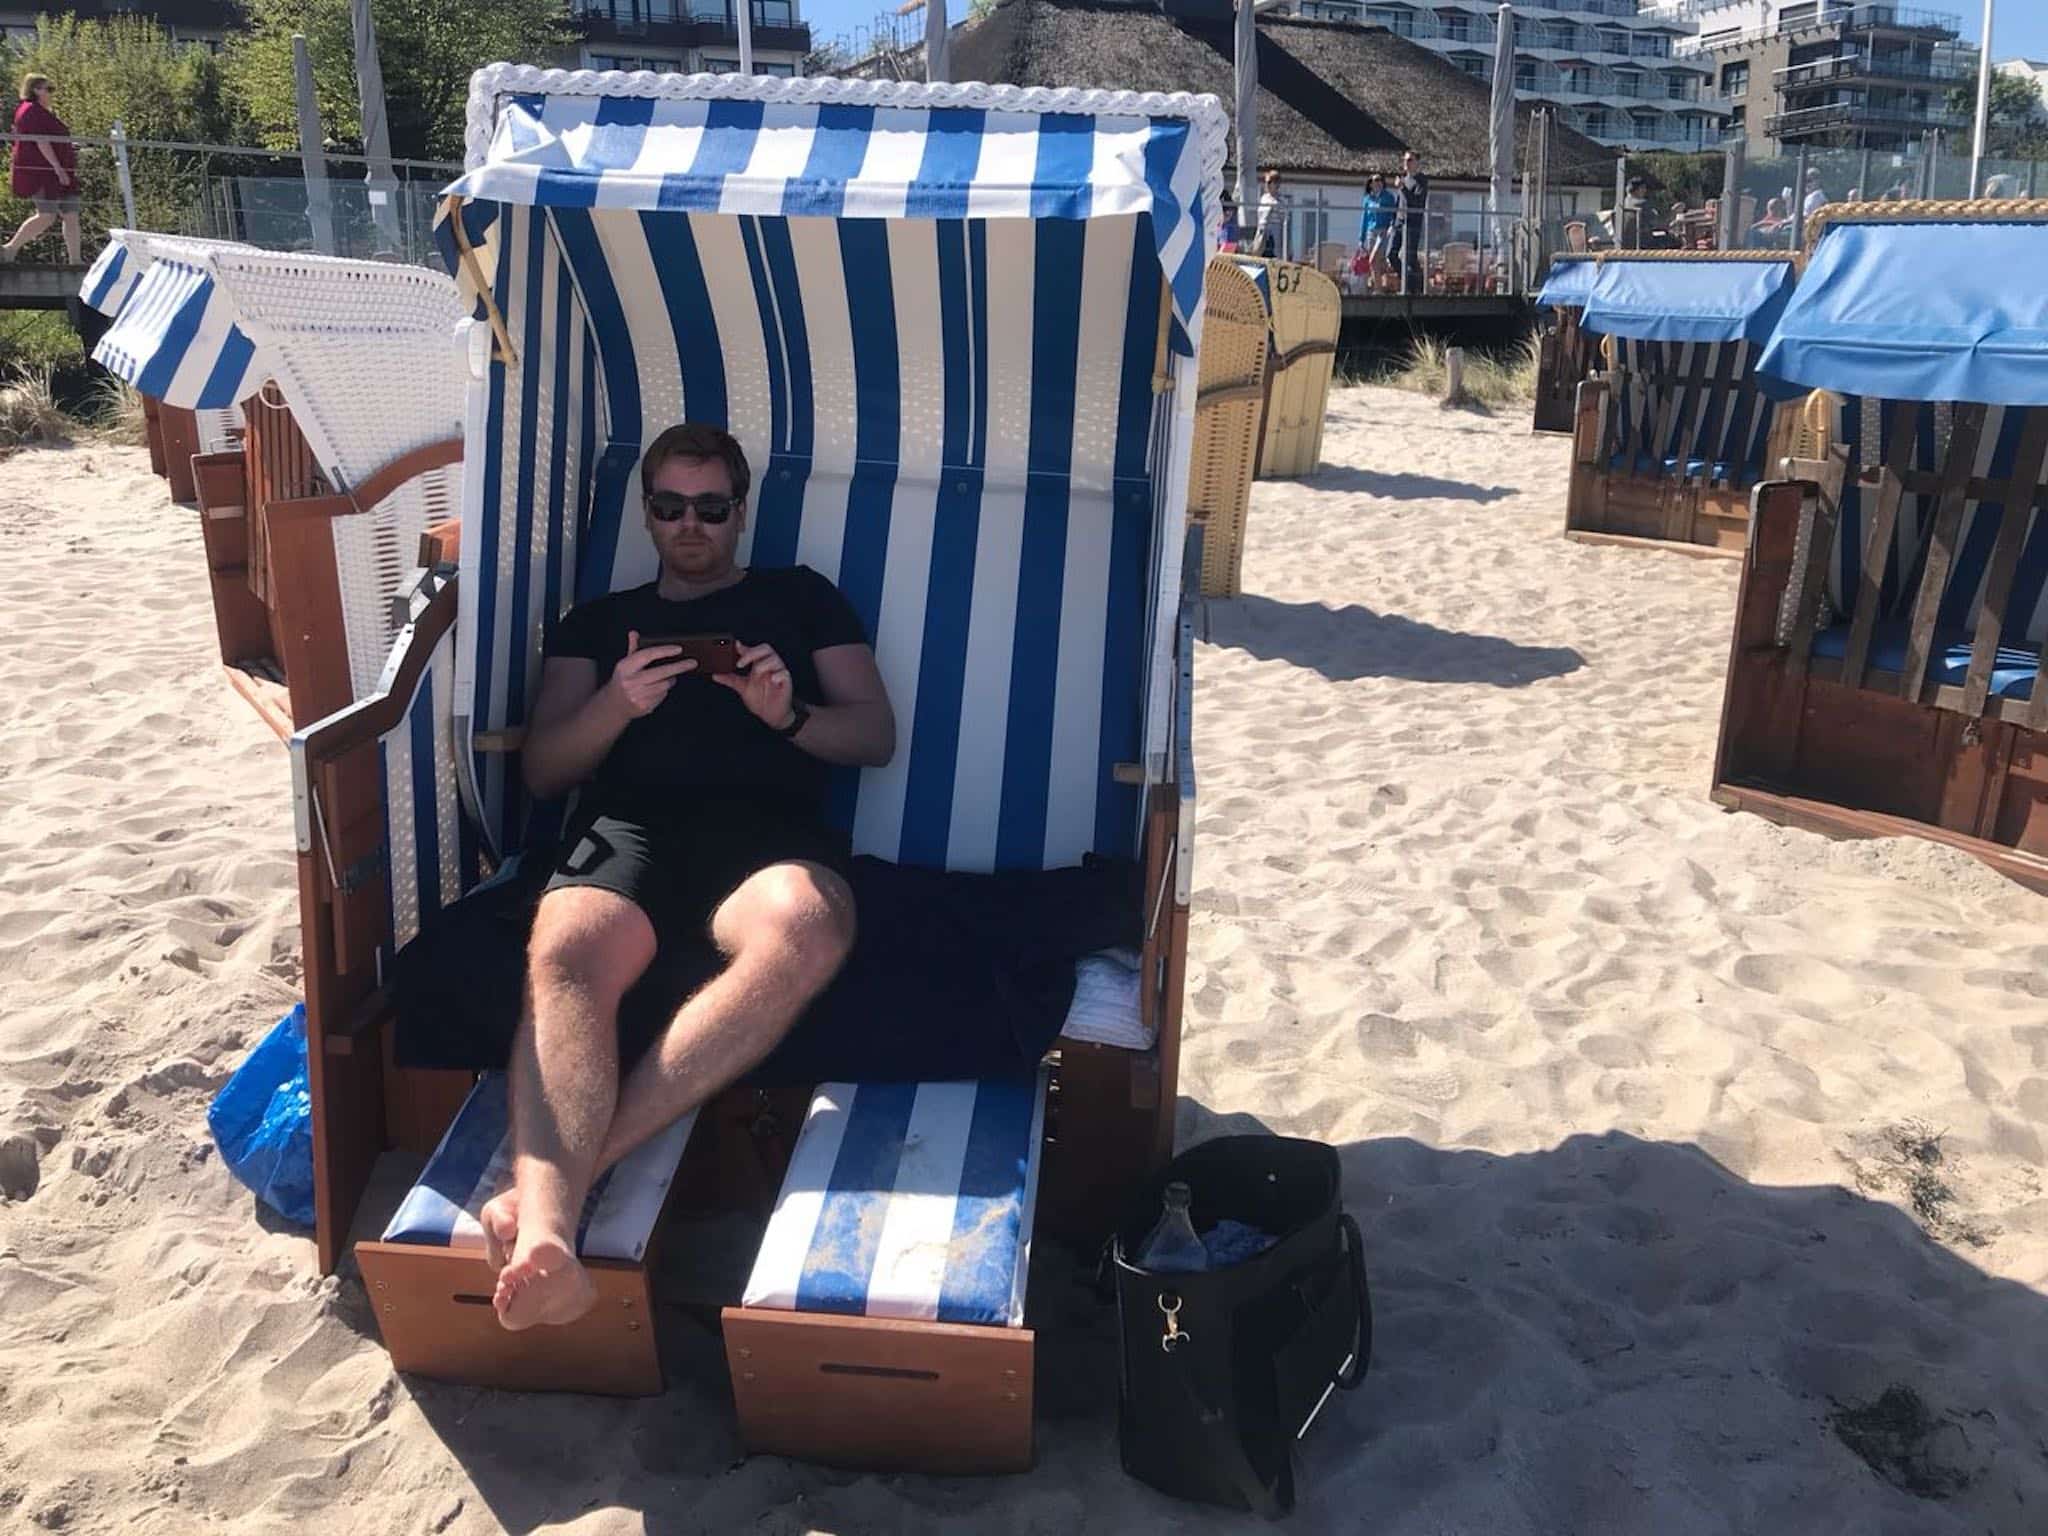 To działa po prostu: nawet na wakacjach, siedząc na leżaku na plaży, możesz mieć wszystko pod kontrolą dzięki kamerze IP.